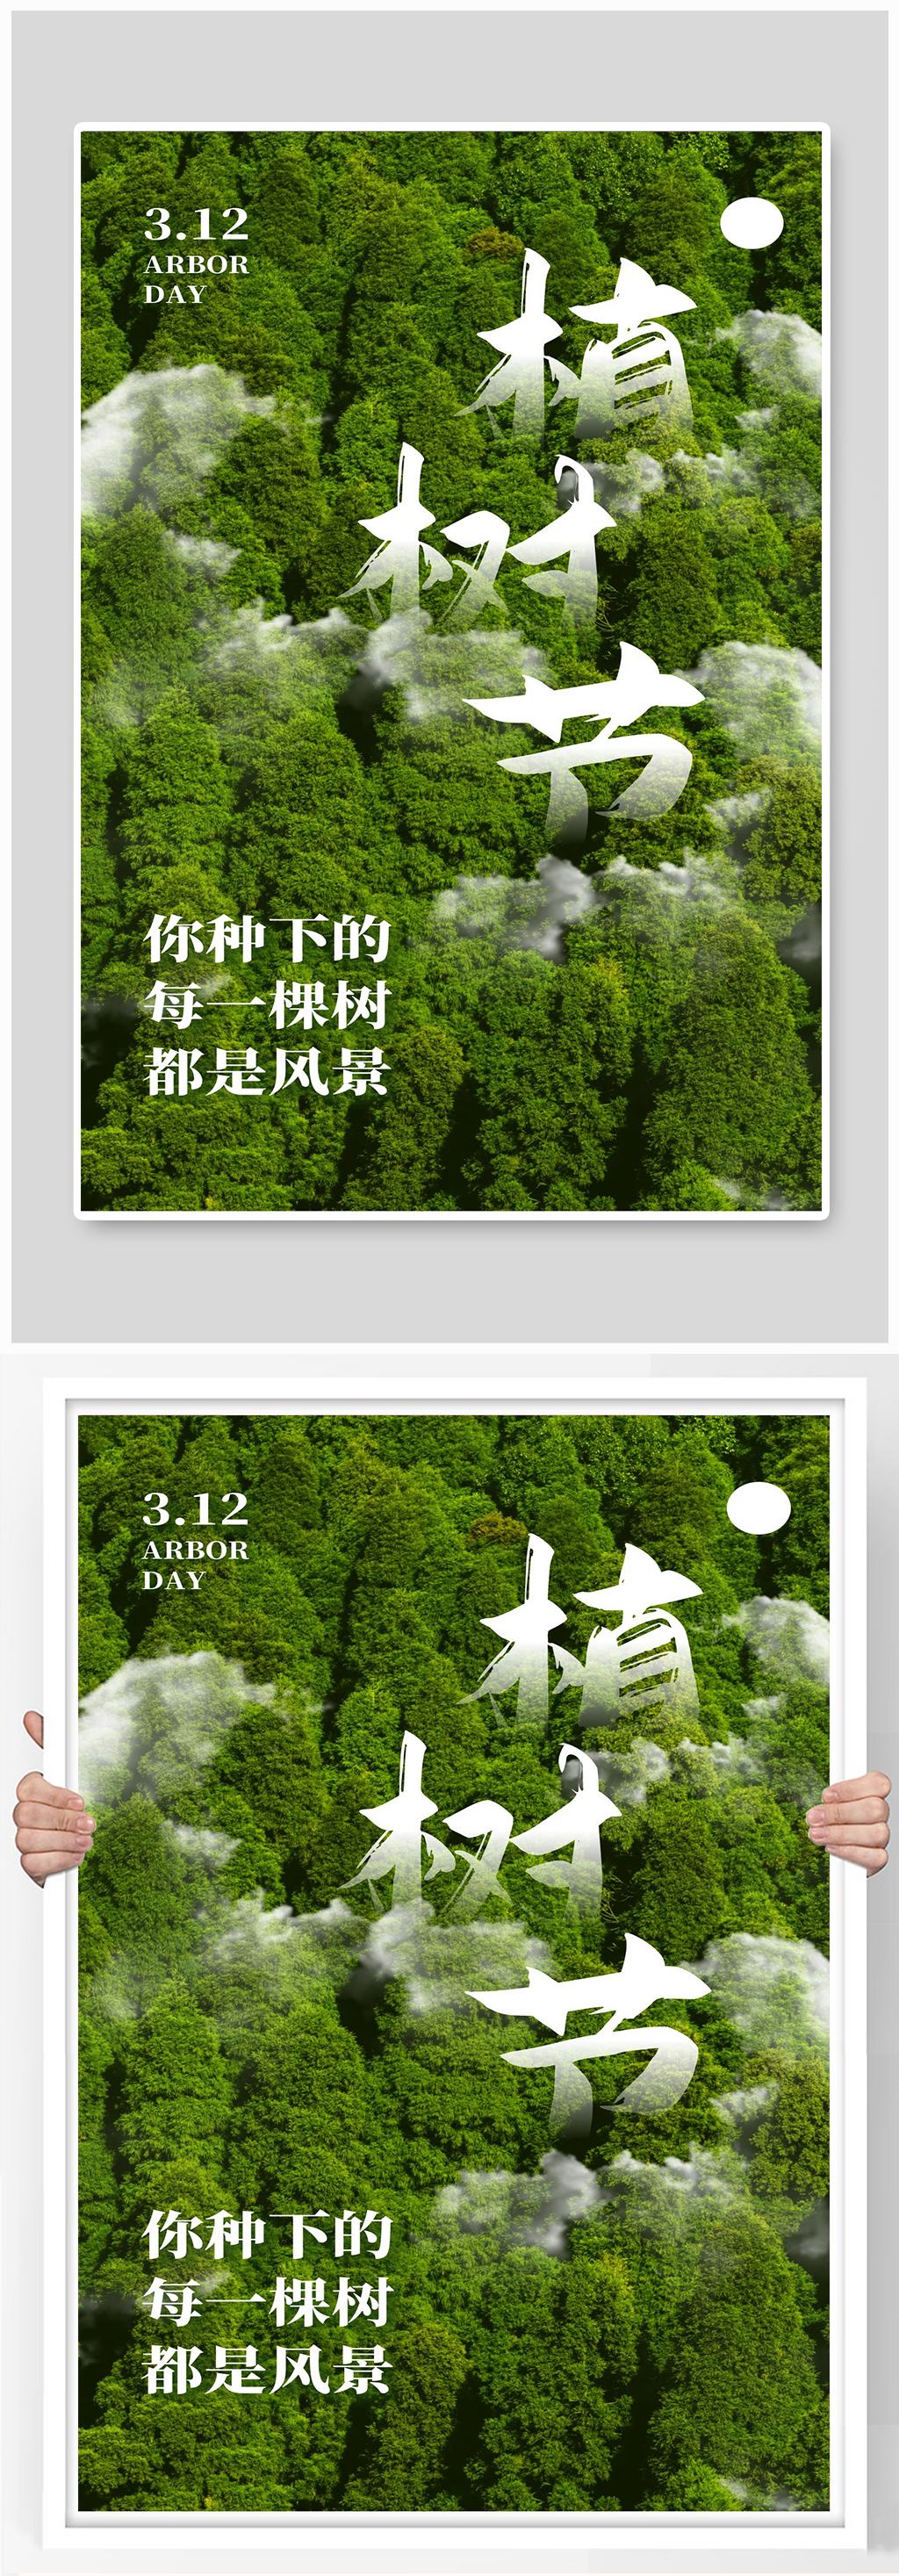 植树节广告语图片图片